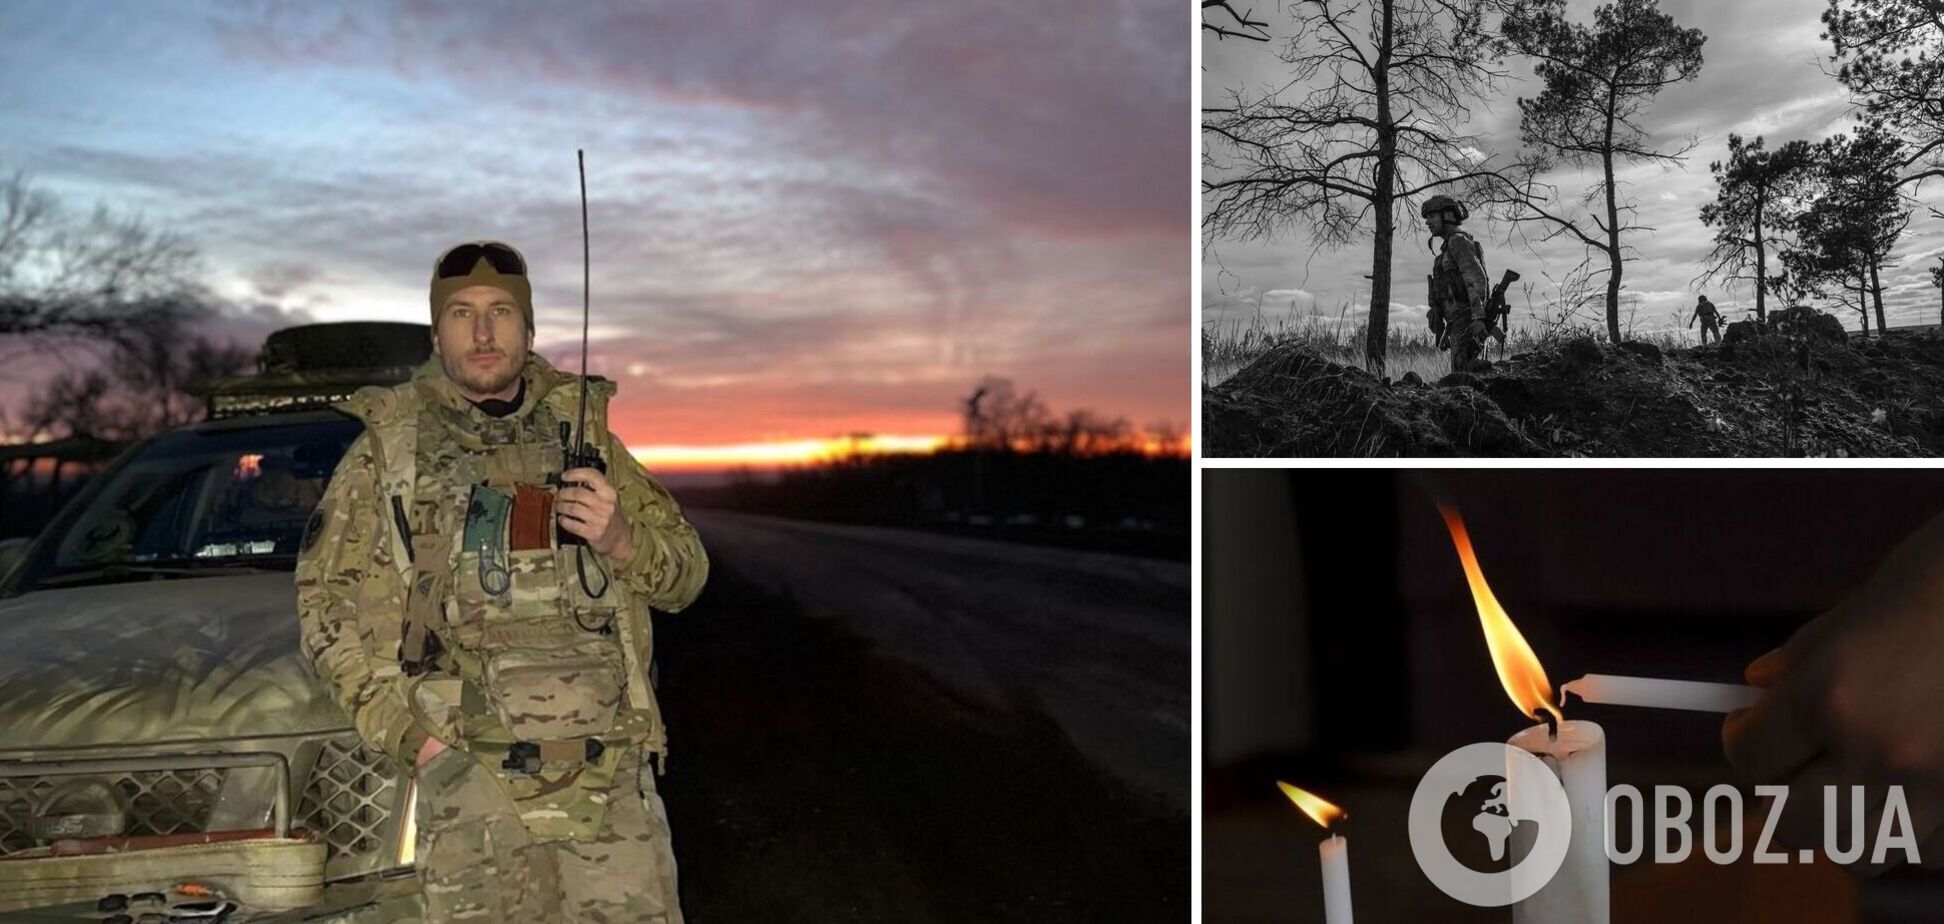 Помер чеський медик, який отримав тяжке поранення на Донбасі під час евакуації бійця ЗСУ  